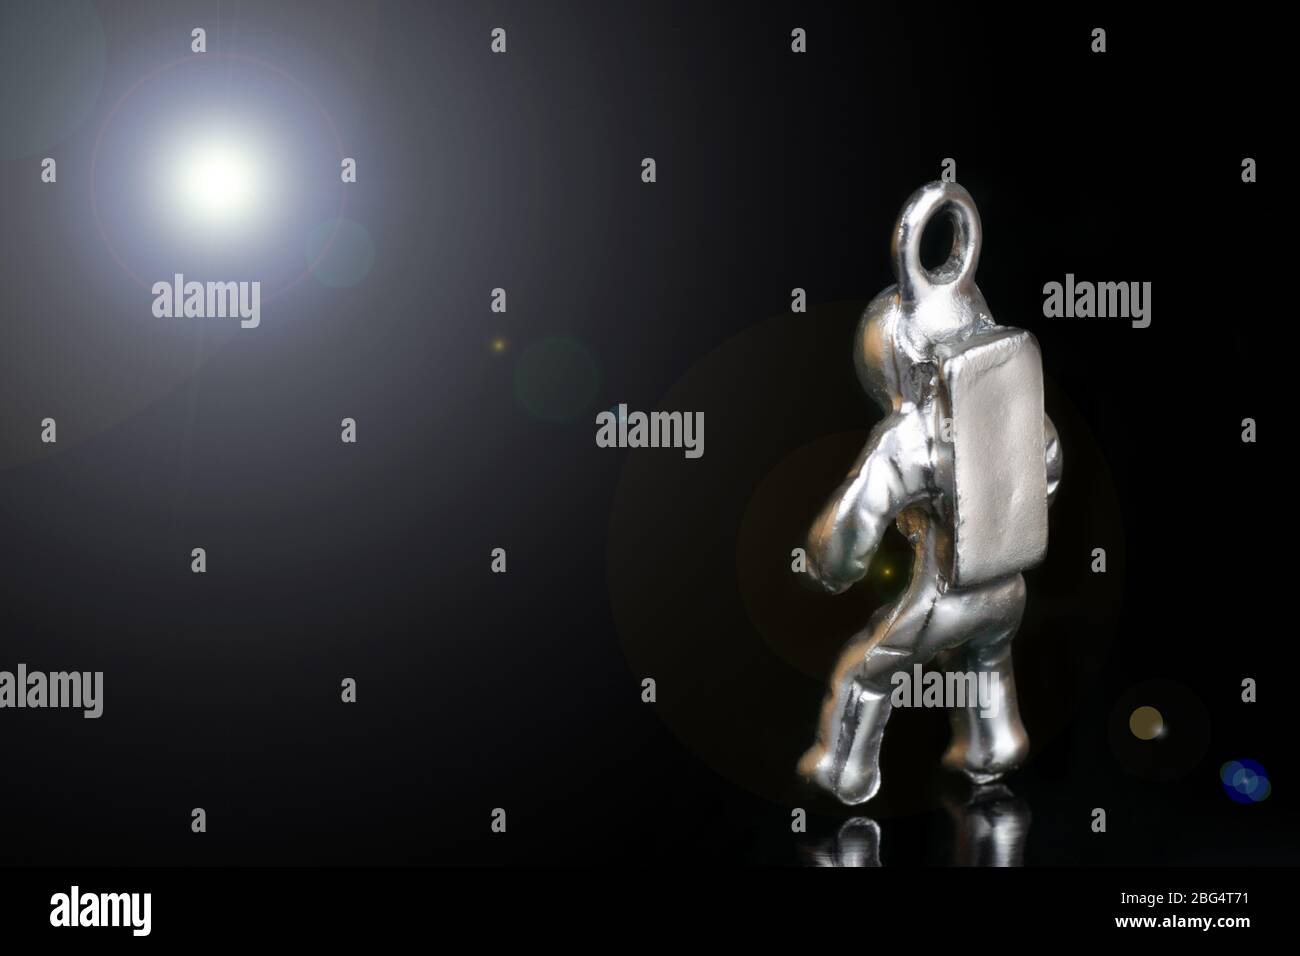 Minuscola statuina d'acciaio di un astronauta che guarda la luce di una stella lontana. Primo piano, isolato su nero, con lente svasata. Foto Stock